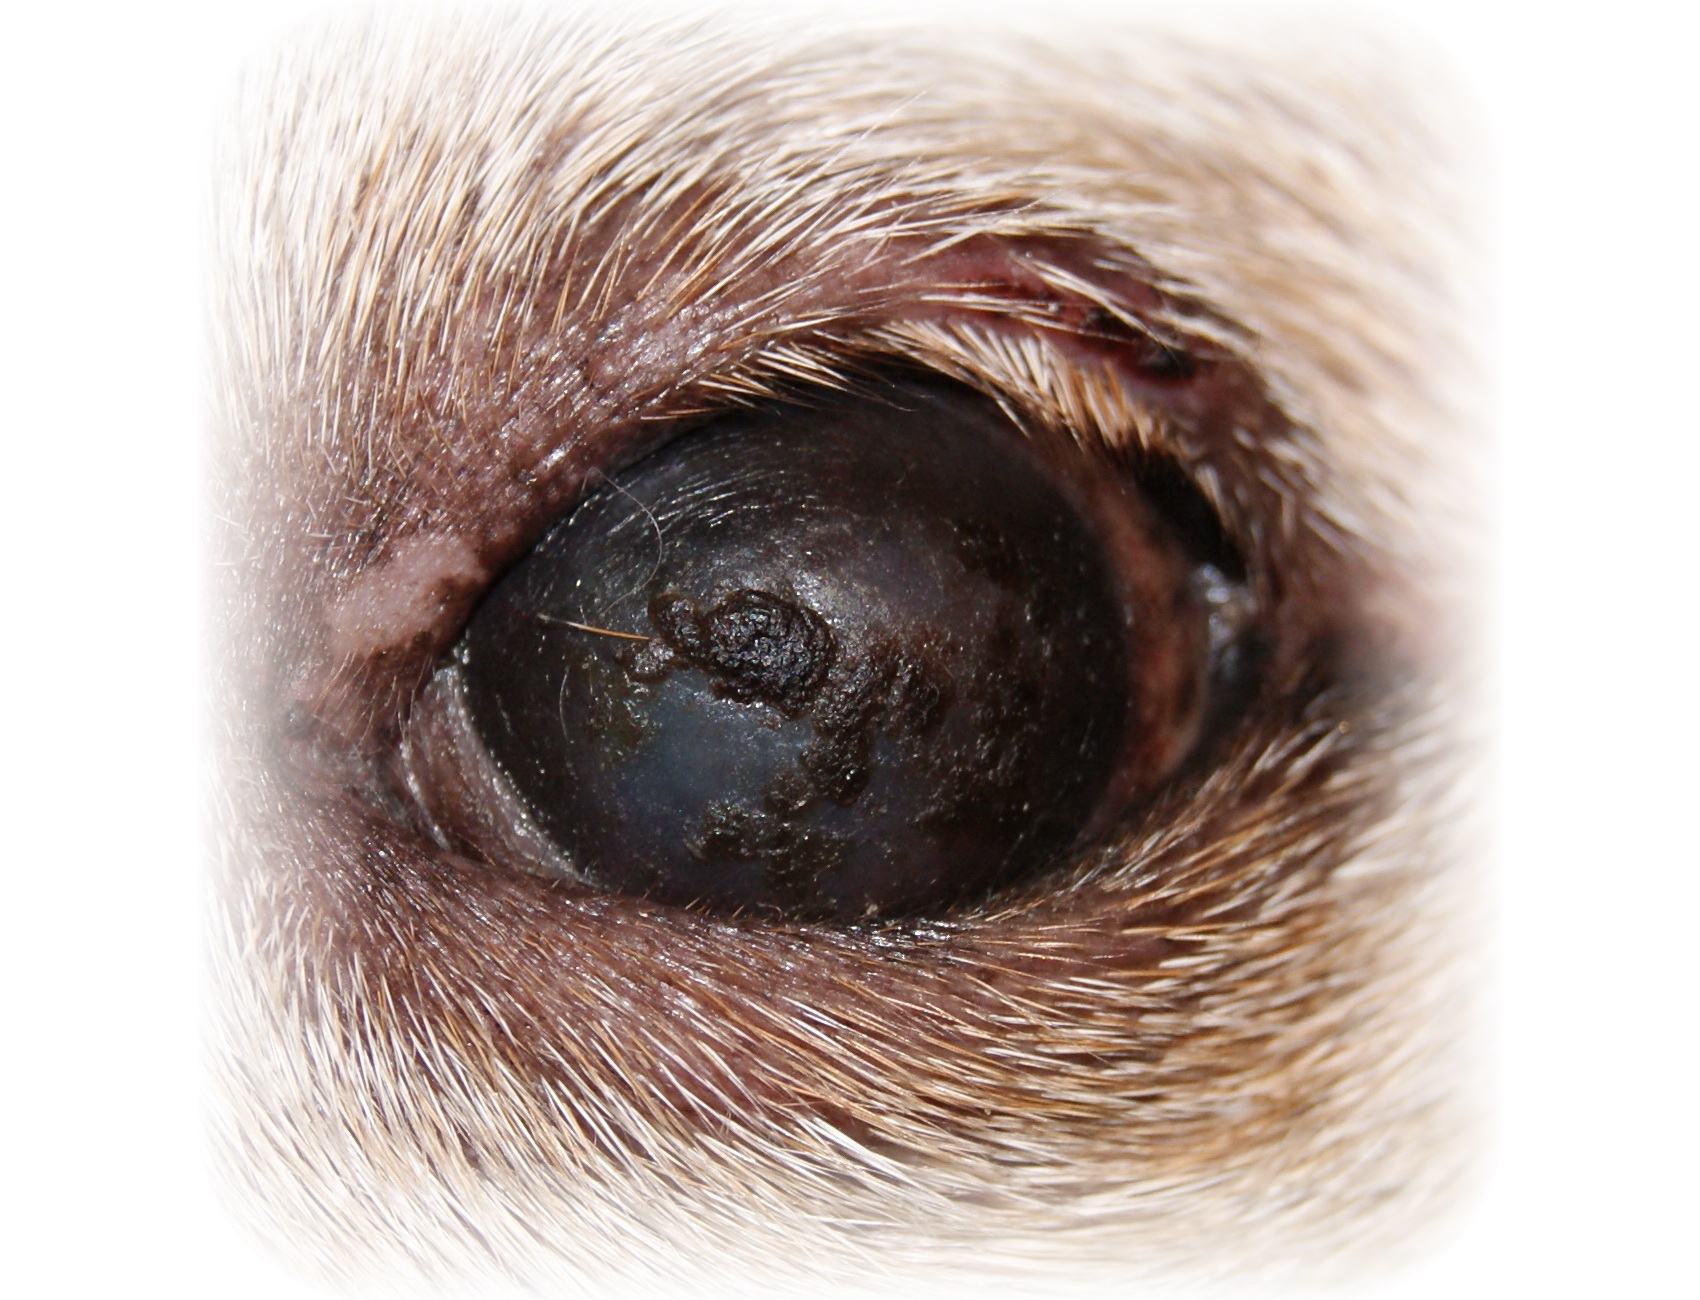 Болезни глаз у собак, причины, симптомы, лечение